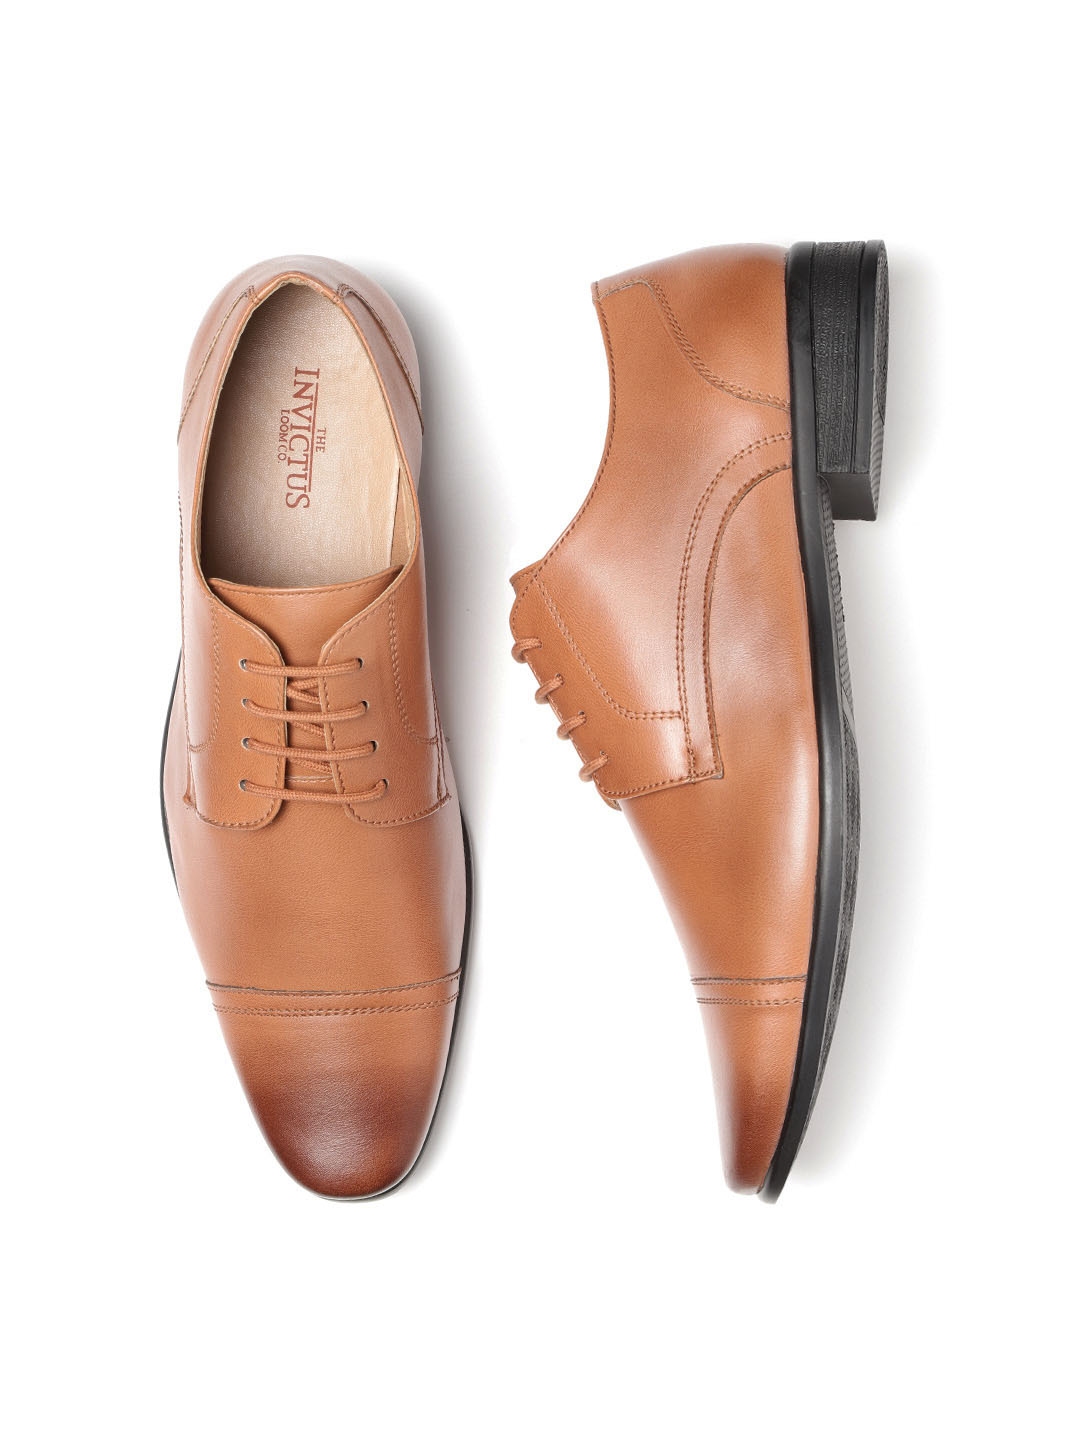 tan colour formal shoes